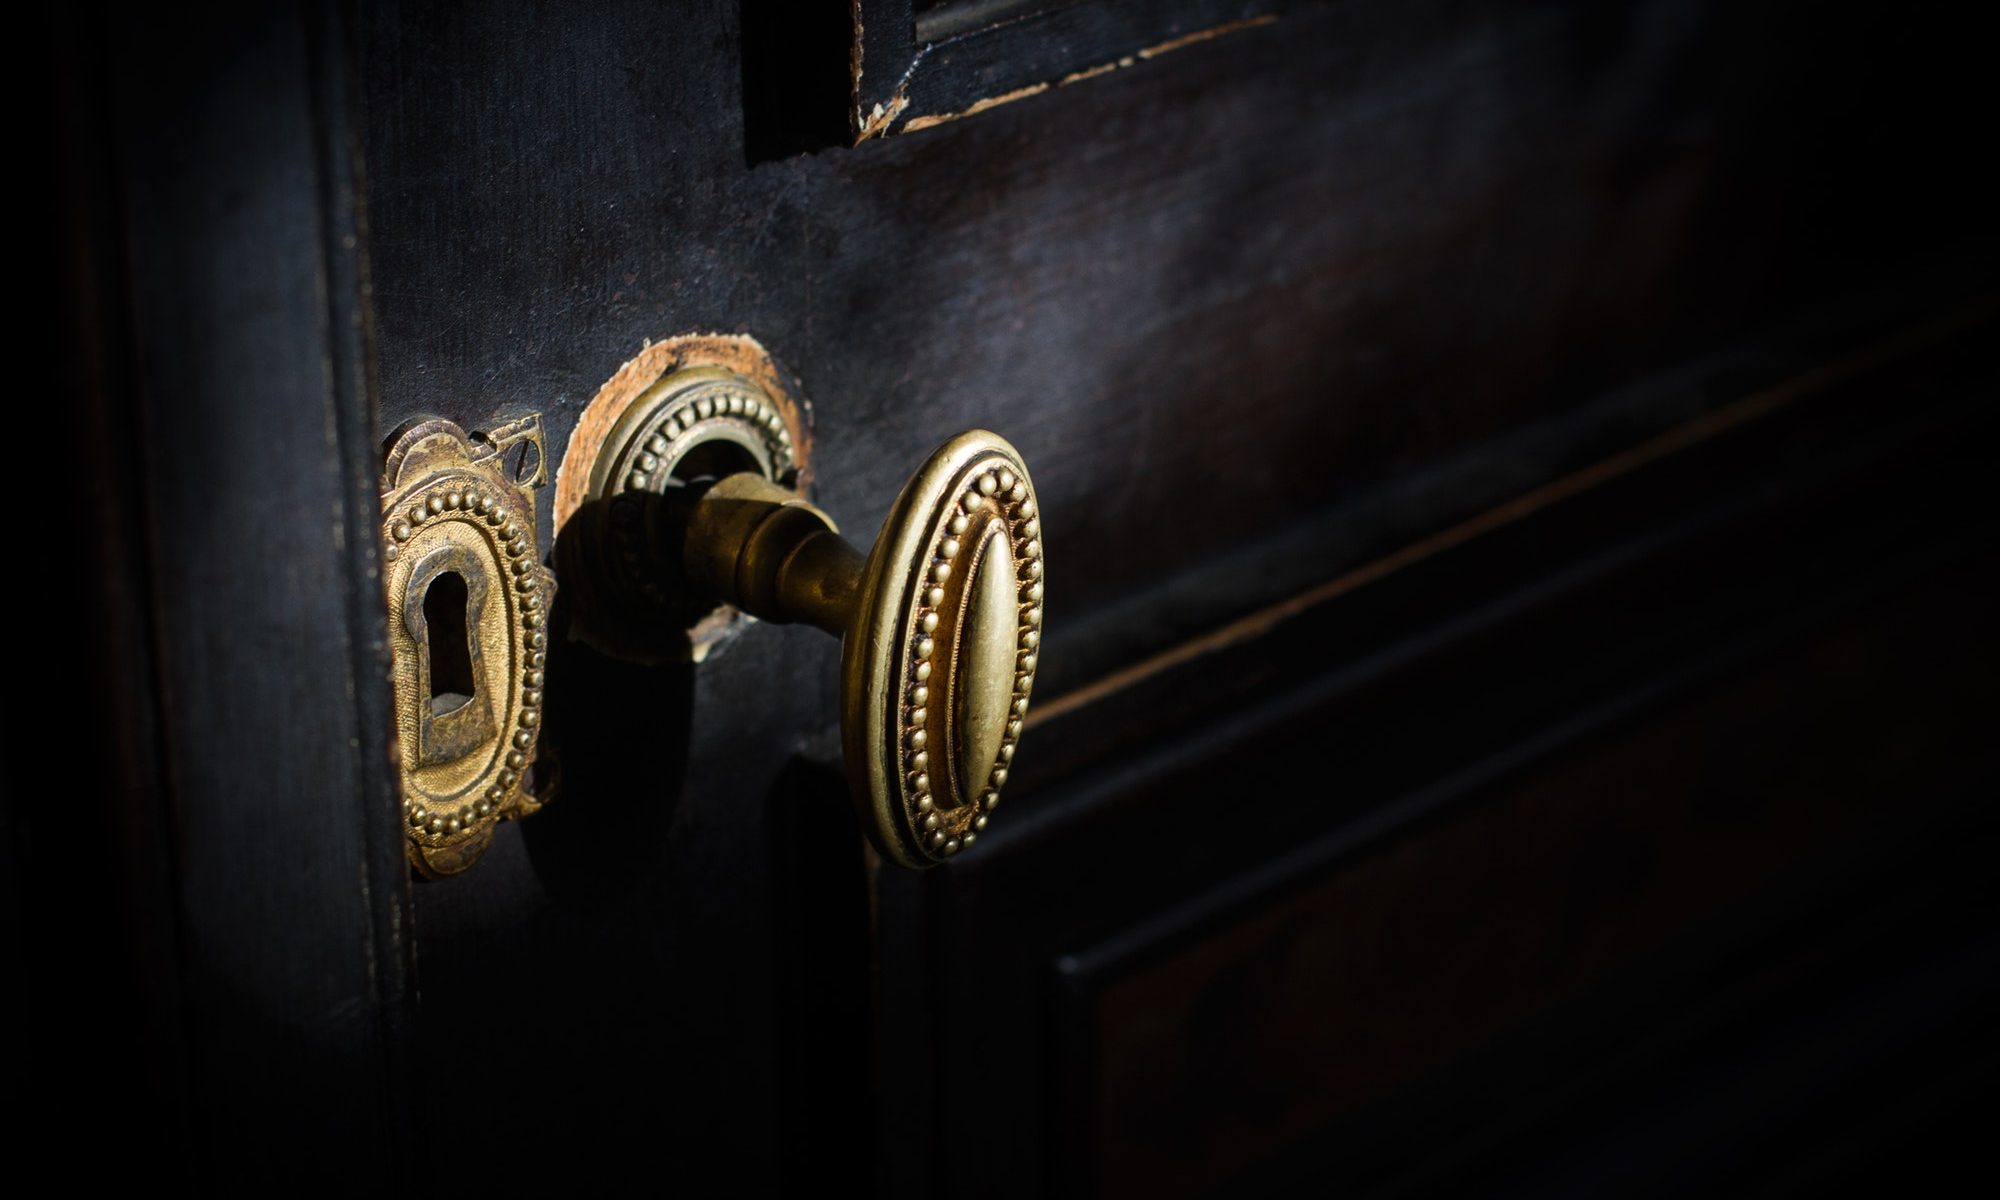 detail of antique golden door handle knob